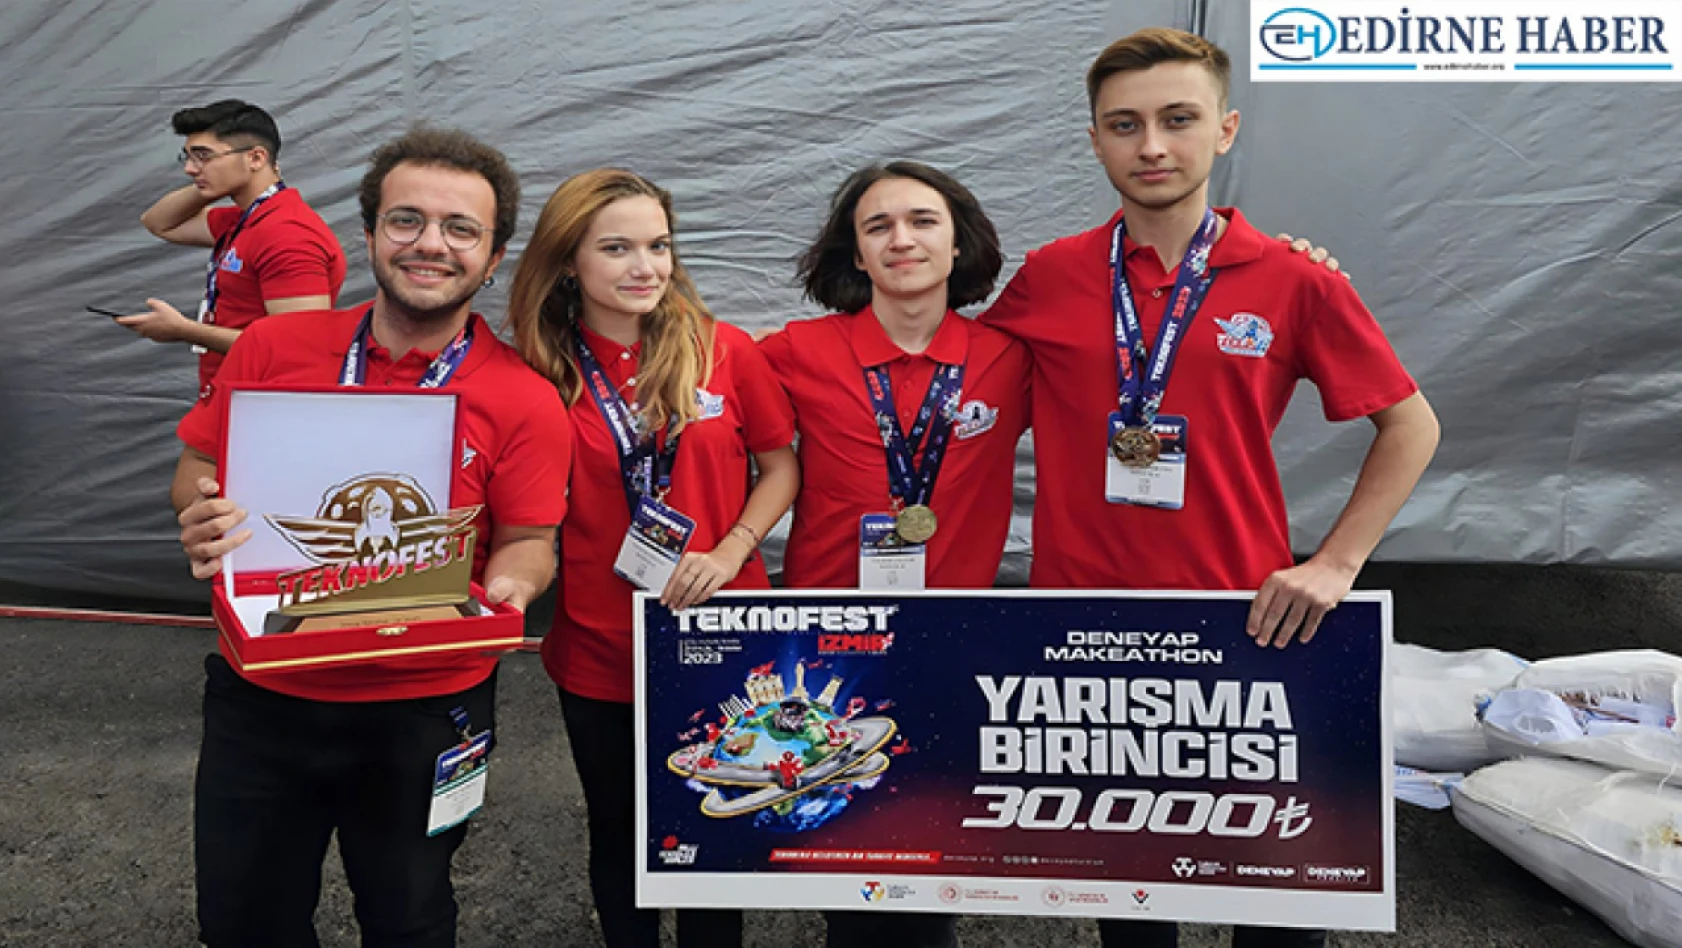 Edirne takımının projesi Teknofest'te birinci oldu